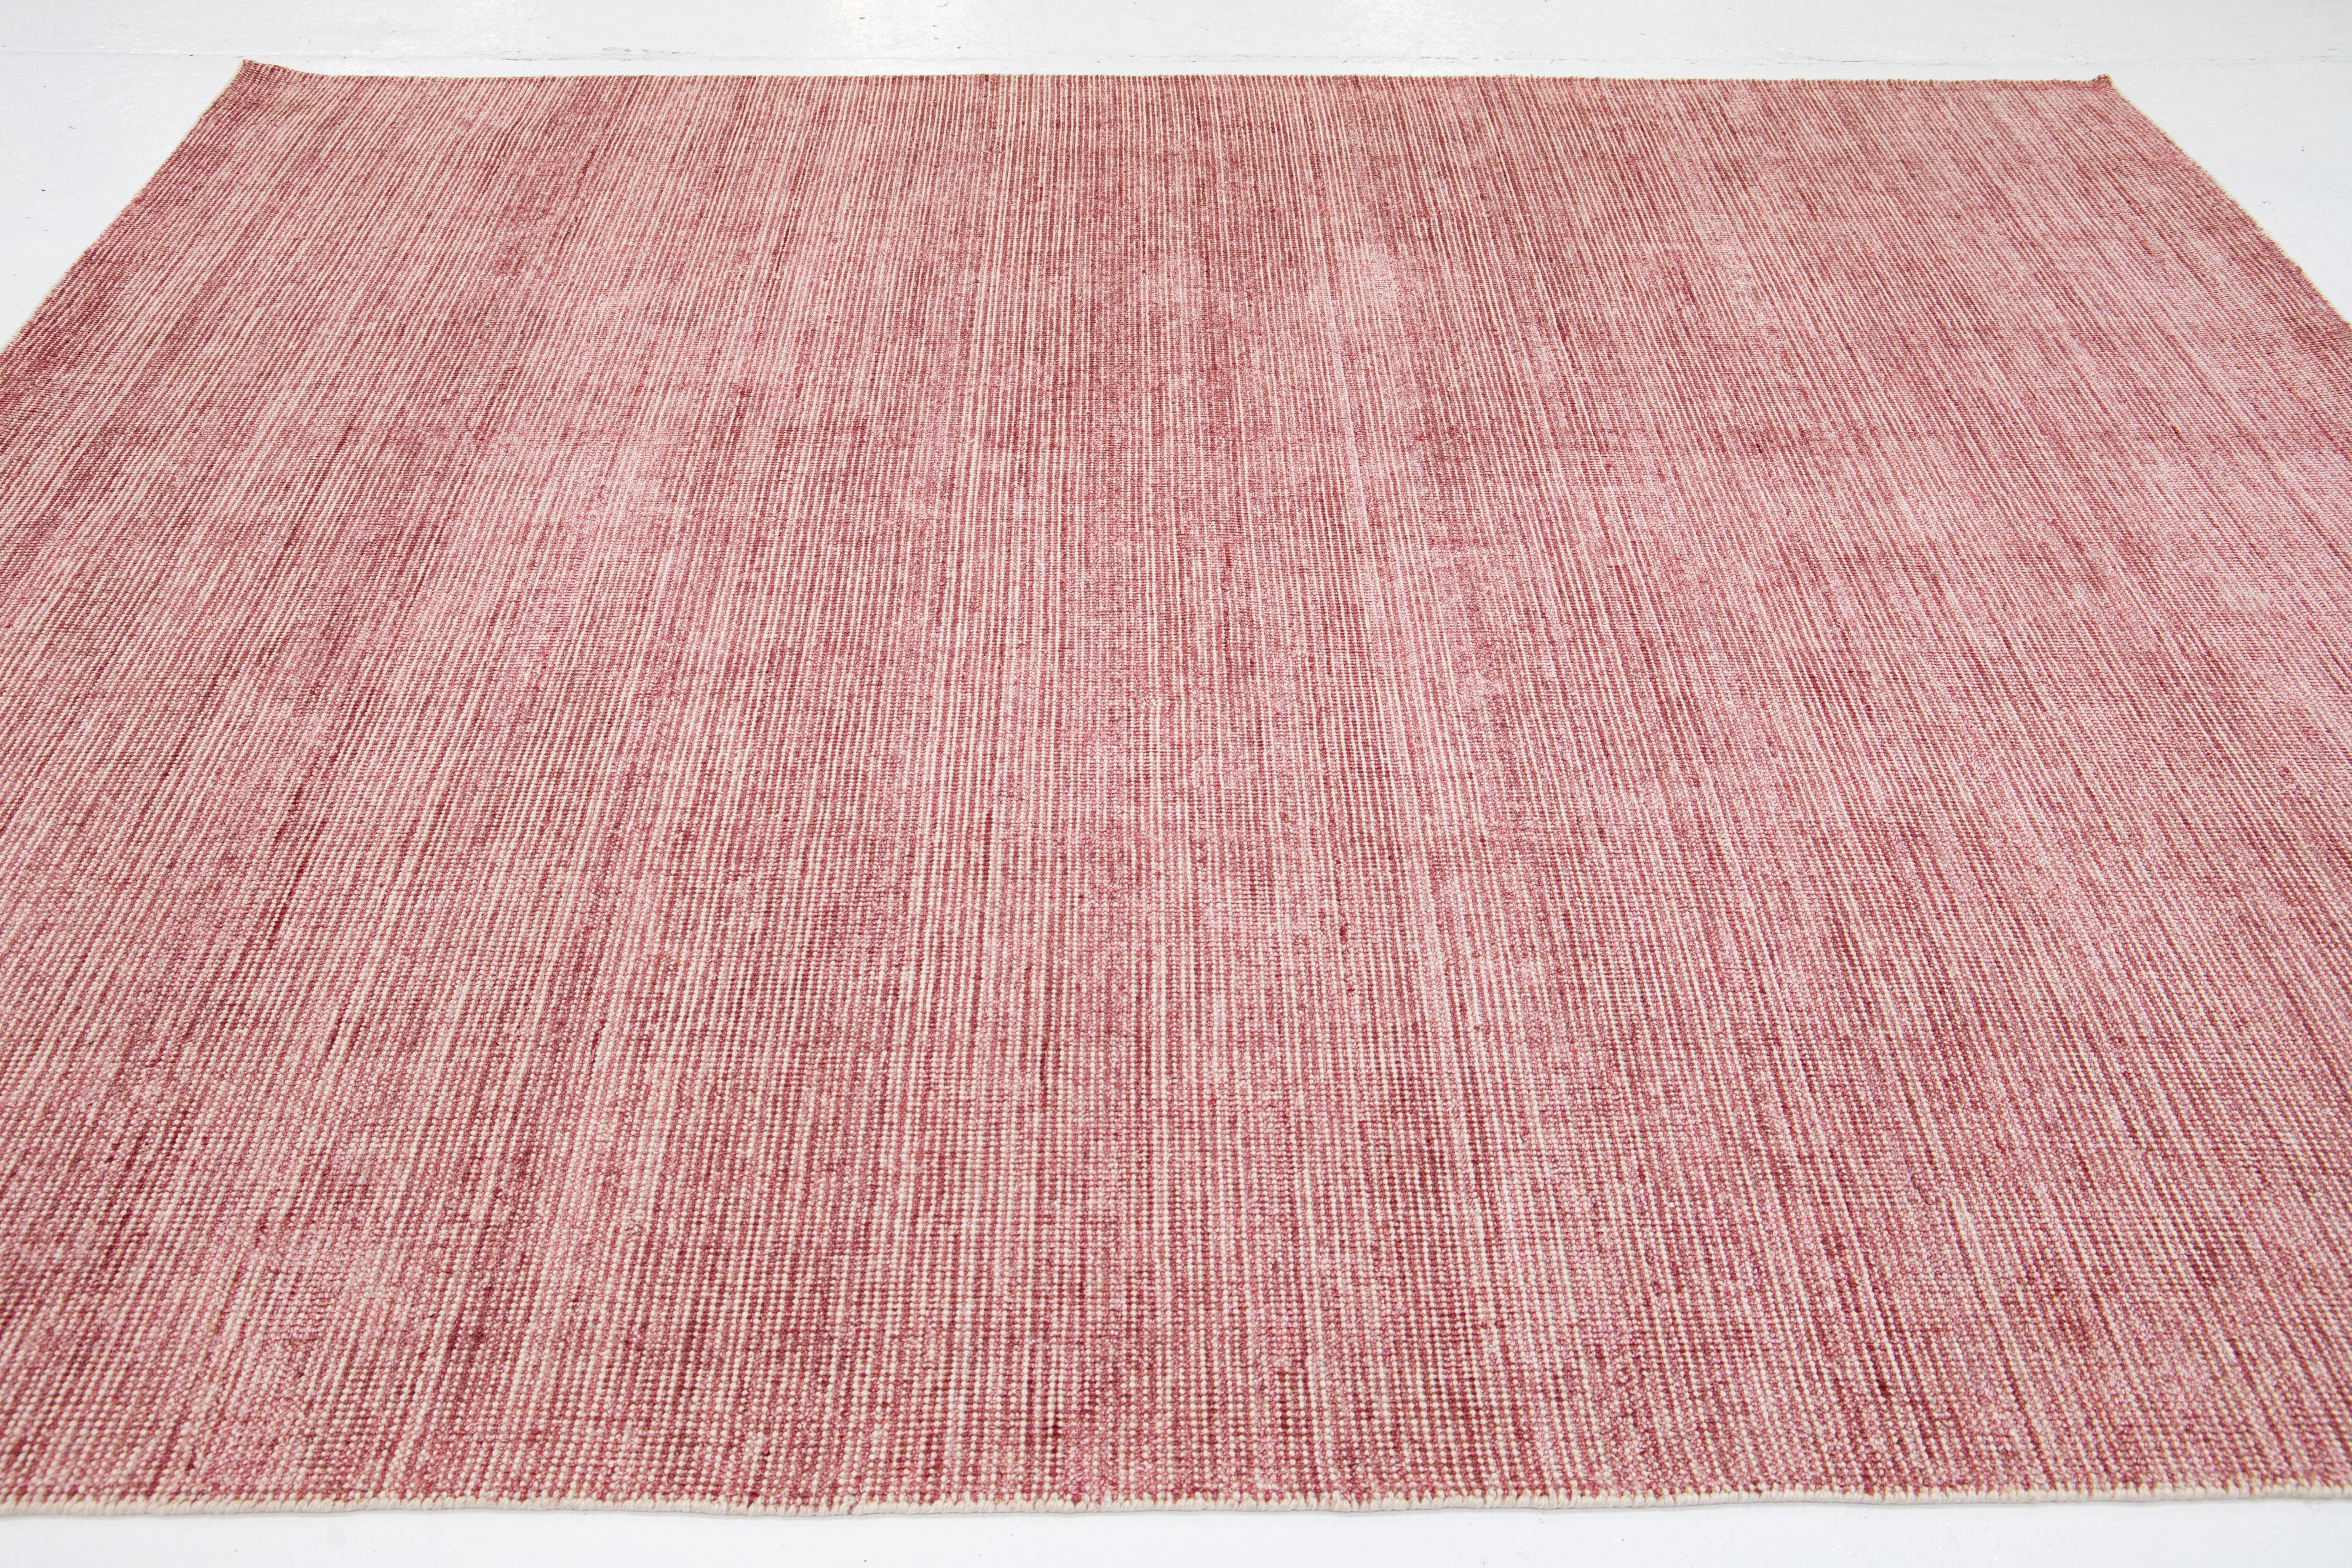 Wunderschöner handgefertigter indischer Rillenteppich aus Bambus, Seide und Wolle von Apadana mit einem roten Feld. Dieser Teppich aus der Groove Collection hat ein Allover-Muster.

Dieser Teppich misst 8' x 10'.

Kundenspezifische Farben und Größen